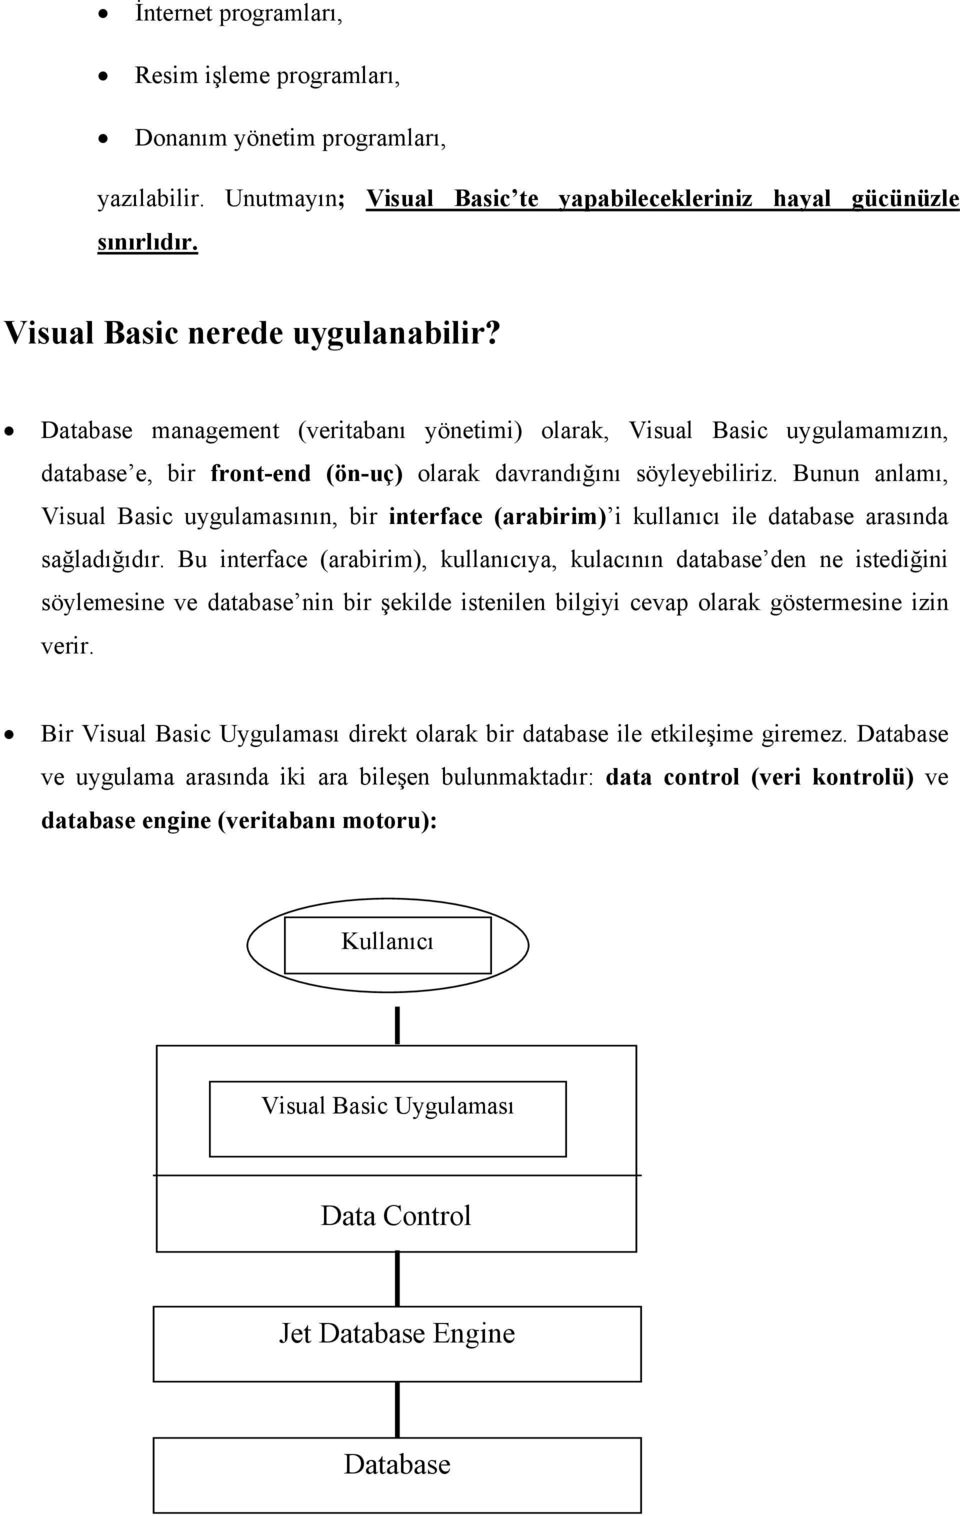 Bunun anlamı, Visual Basic uygulamasının, bir interface (arabirim) i kullanıcı ile database arasında sağladığıdır.